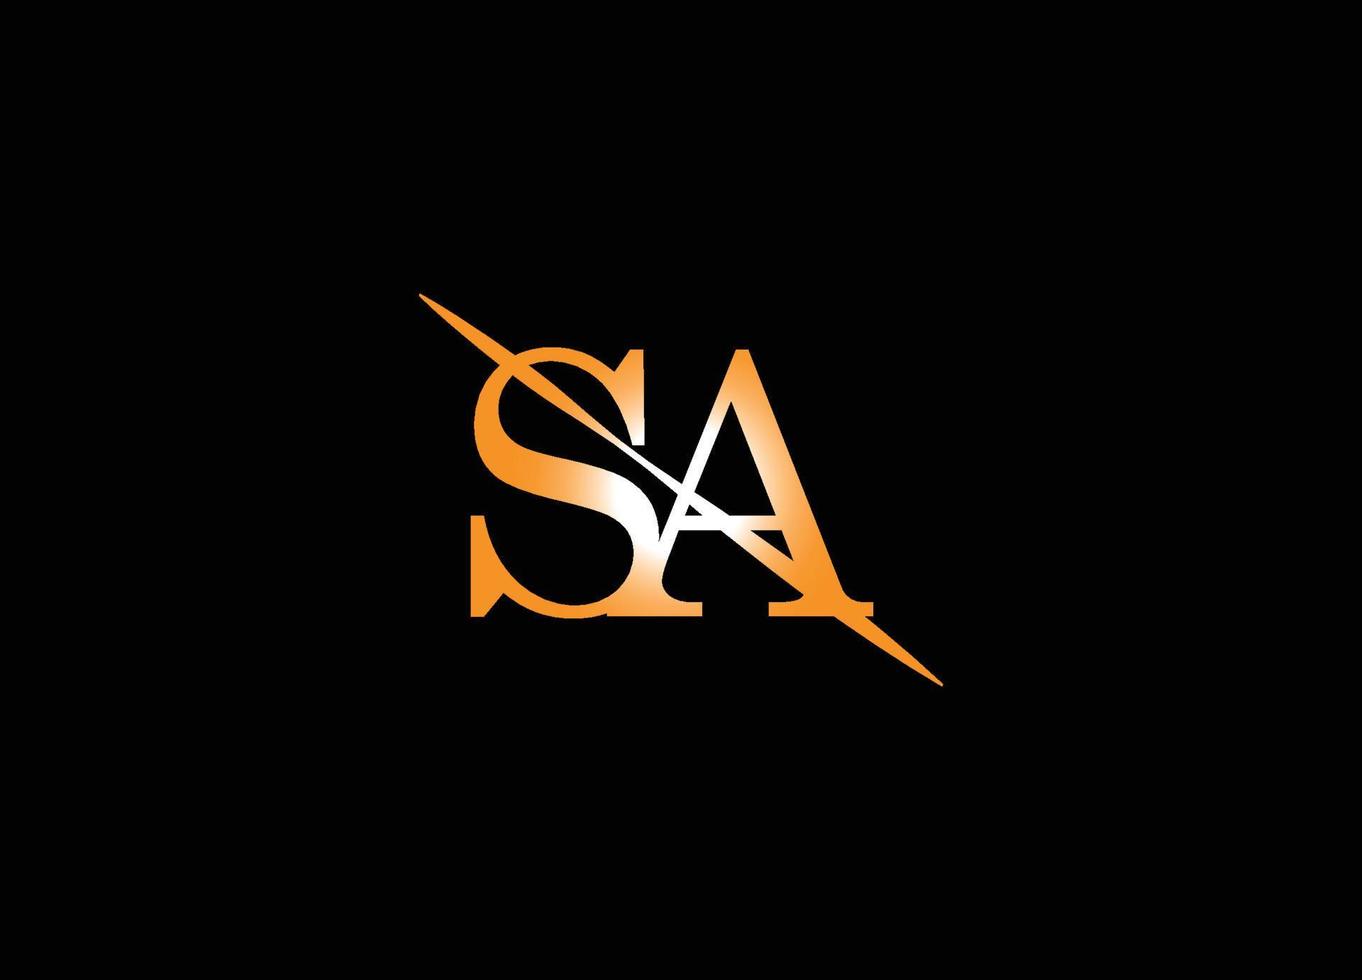 SA logo design, signature logo, letter logo design vector